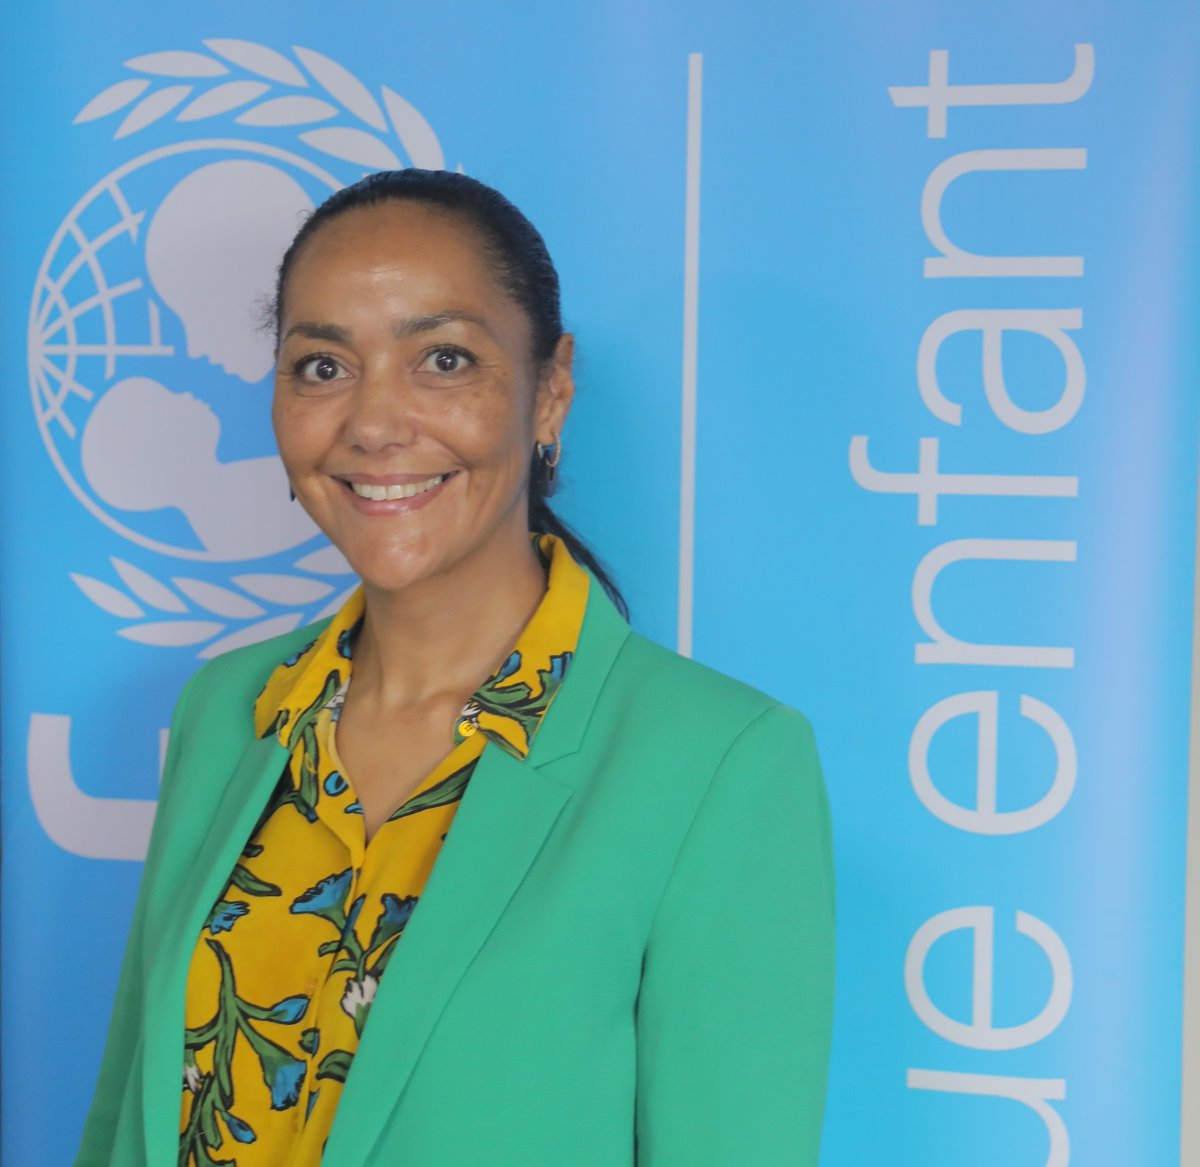 Heureux d’annoncer la nomination de Dr. Marie-Reine Chirezi Fabry au poste de Représentante de l'UNICEF pour le #Gabon, São Tomé et Príncipe, et @CEEAC_ECCAS. Mère et leader, elle est profondément engagée en faveur de l’éclosion des solutions transformatrices #PourChaqueEnfant.